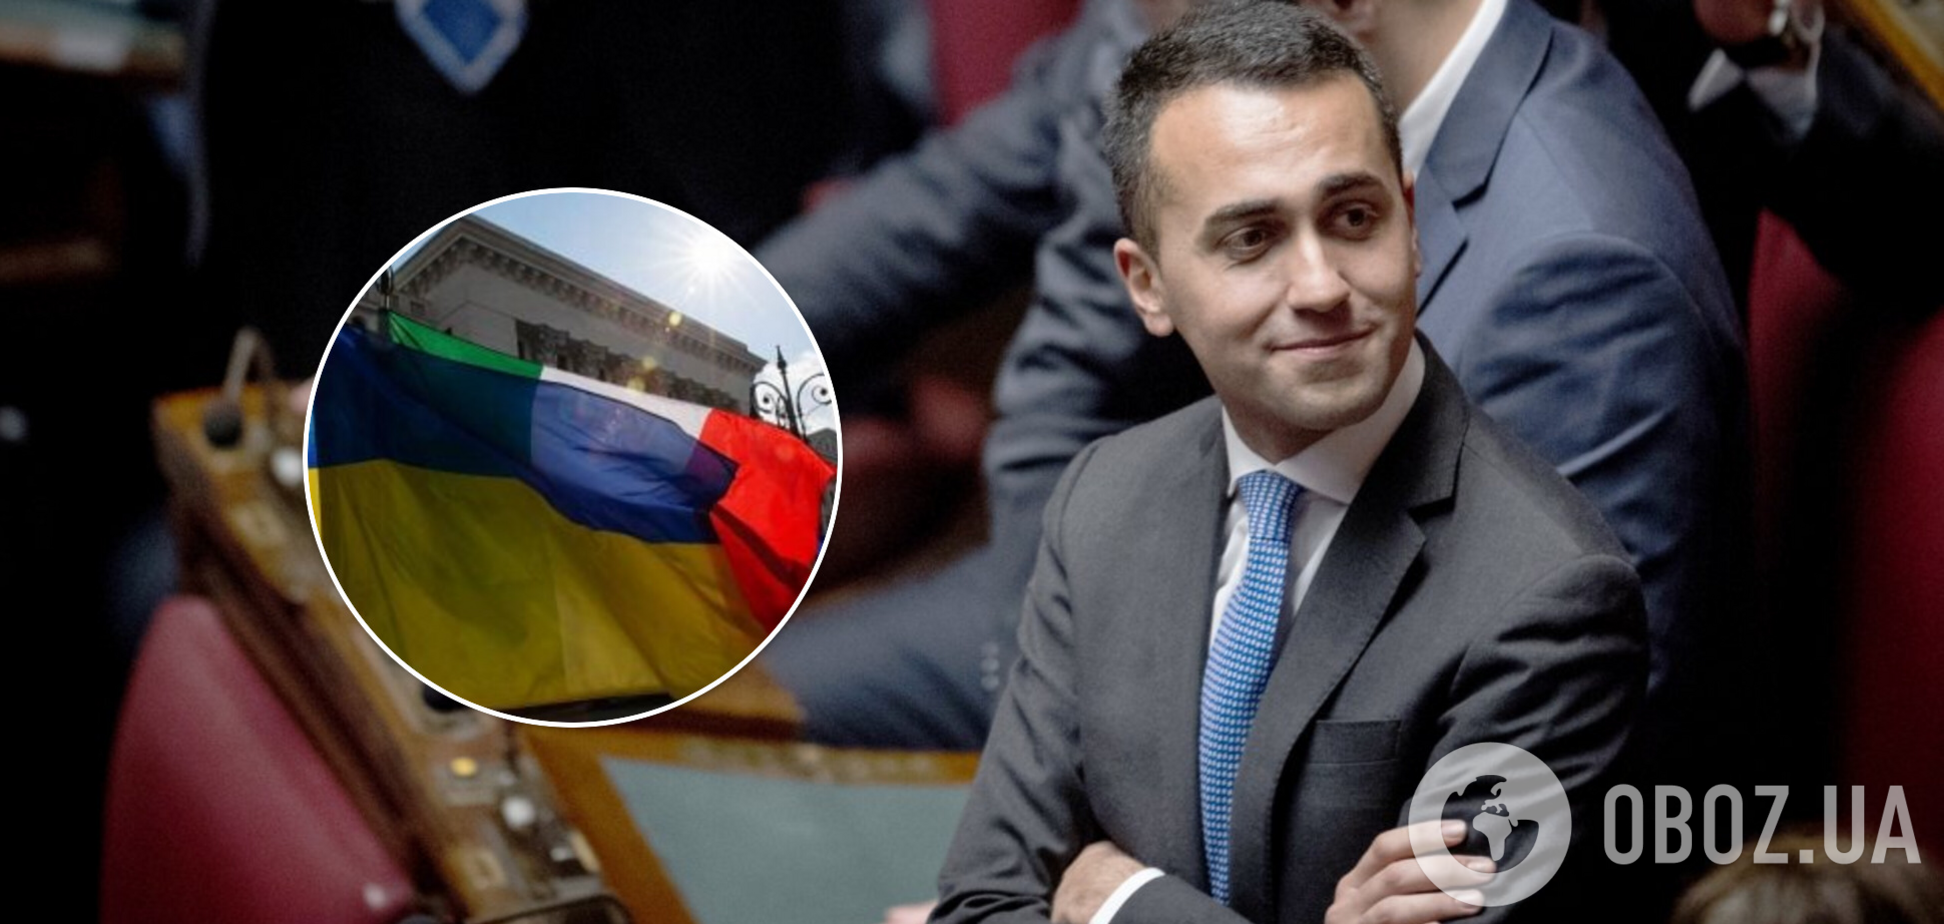 Италия может стать гарантом безопасности Украины: продолжение переговоров назвали приоритетом